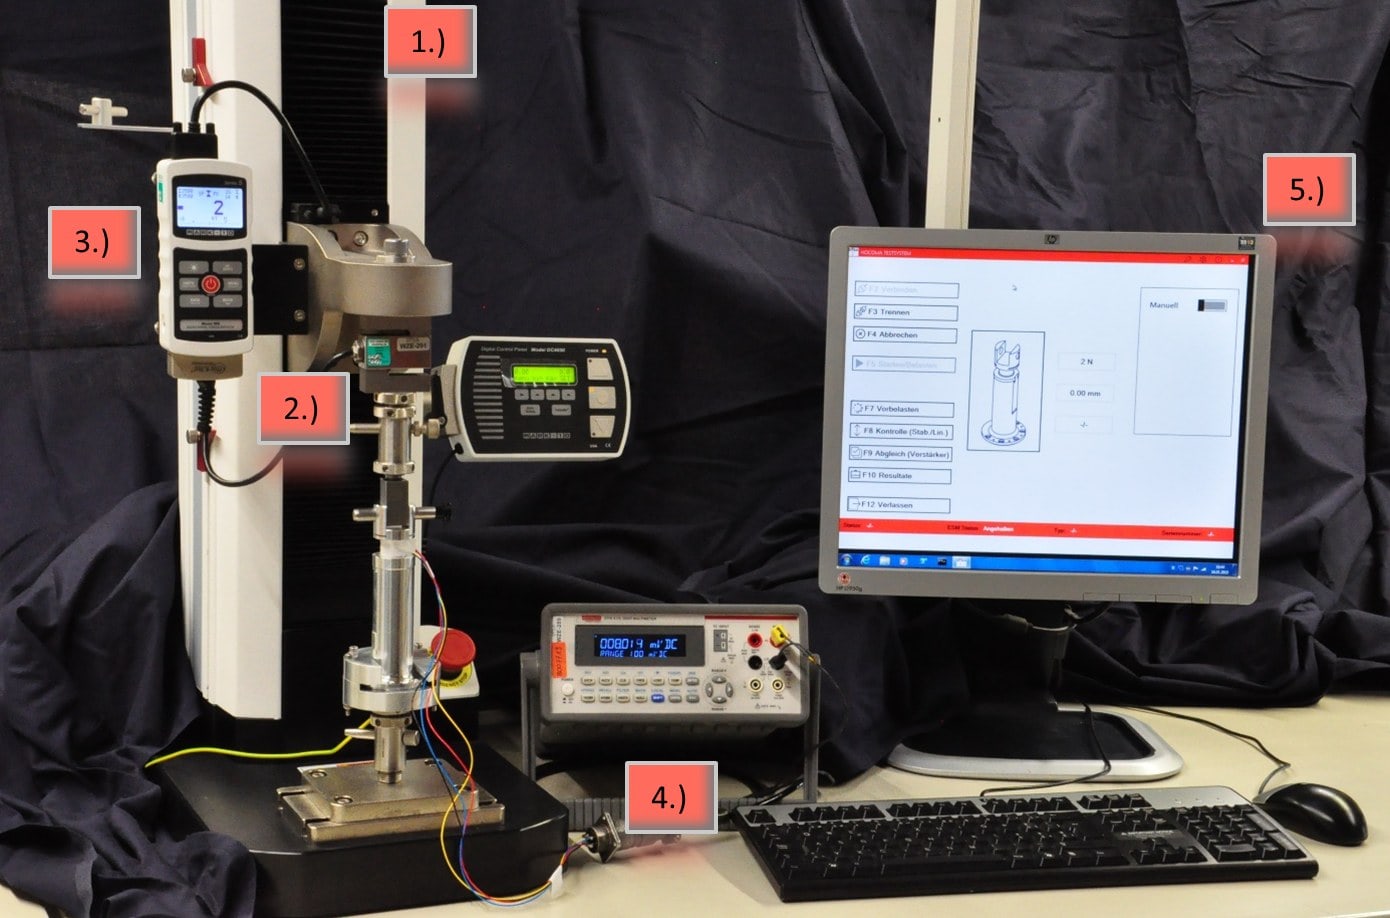 ESM1500, M5i, reference sensor MR01-1000, clamped test specimen, voltmeter, PC Station